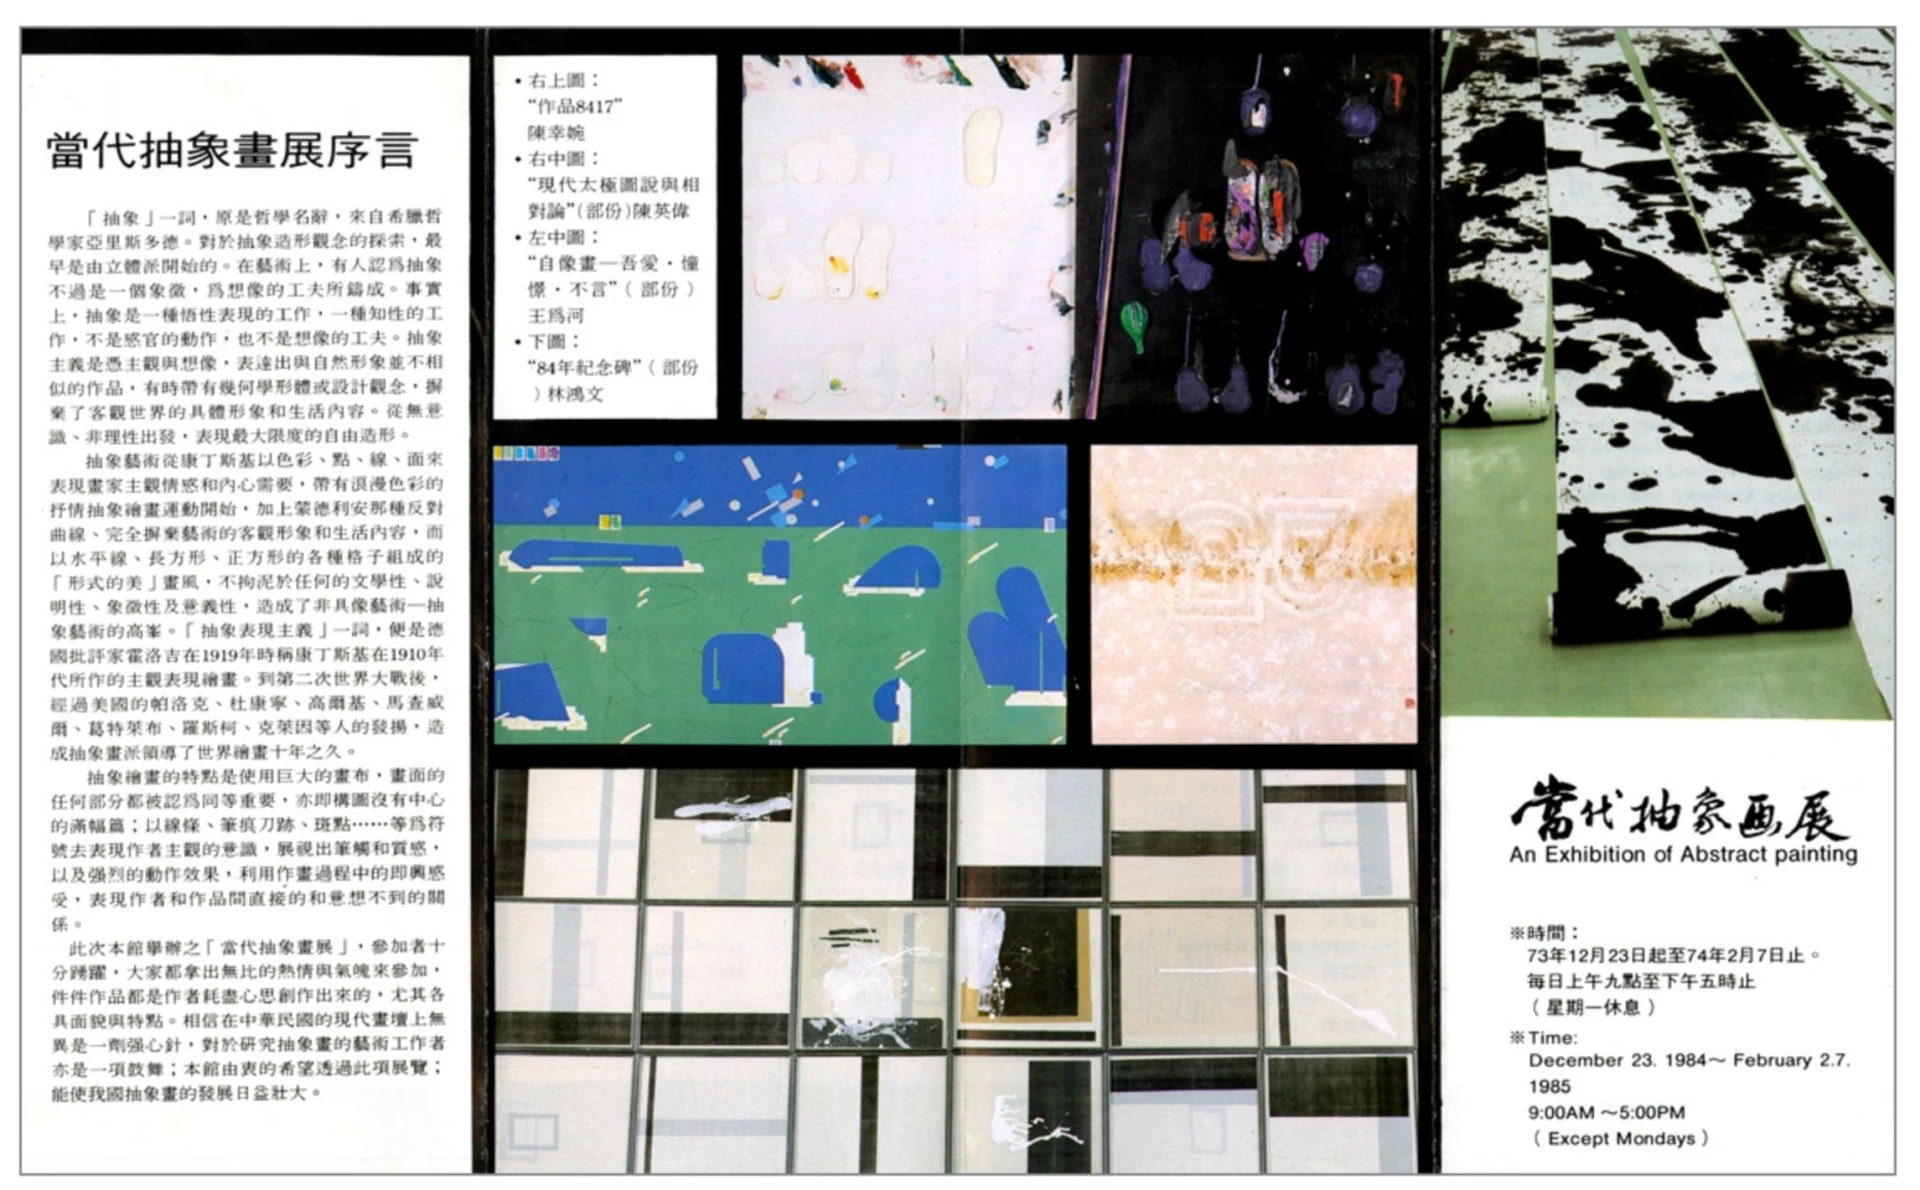 北美館「當代抽象畫展」展覽文宣，1984 ©台北市立美術館-圖片